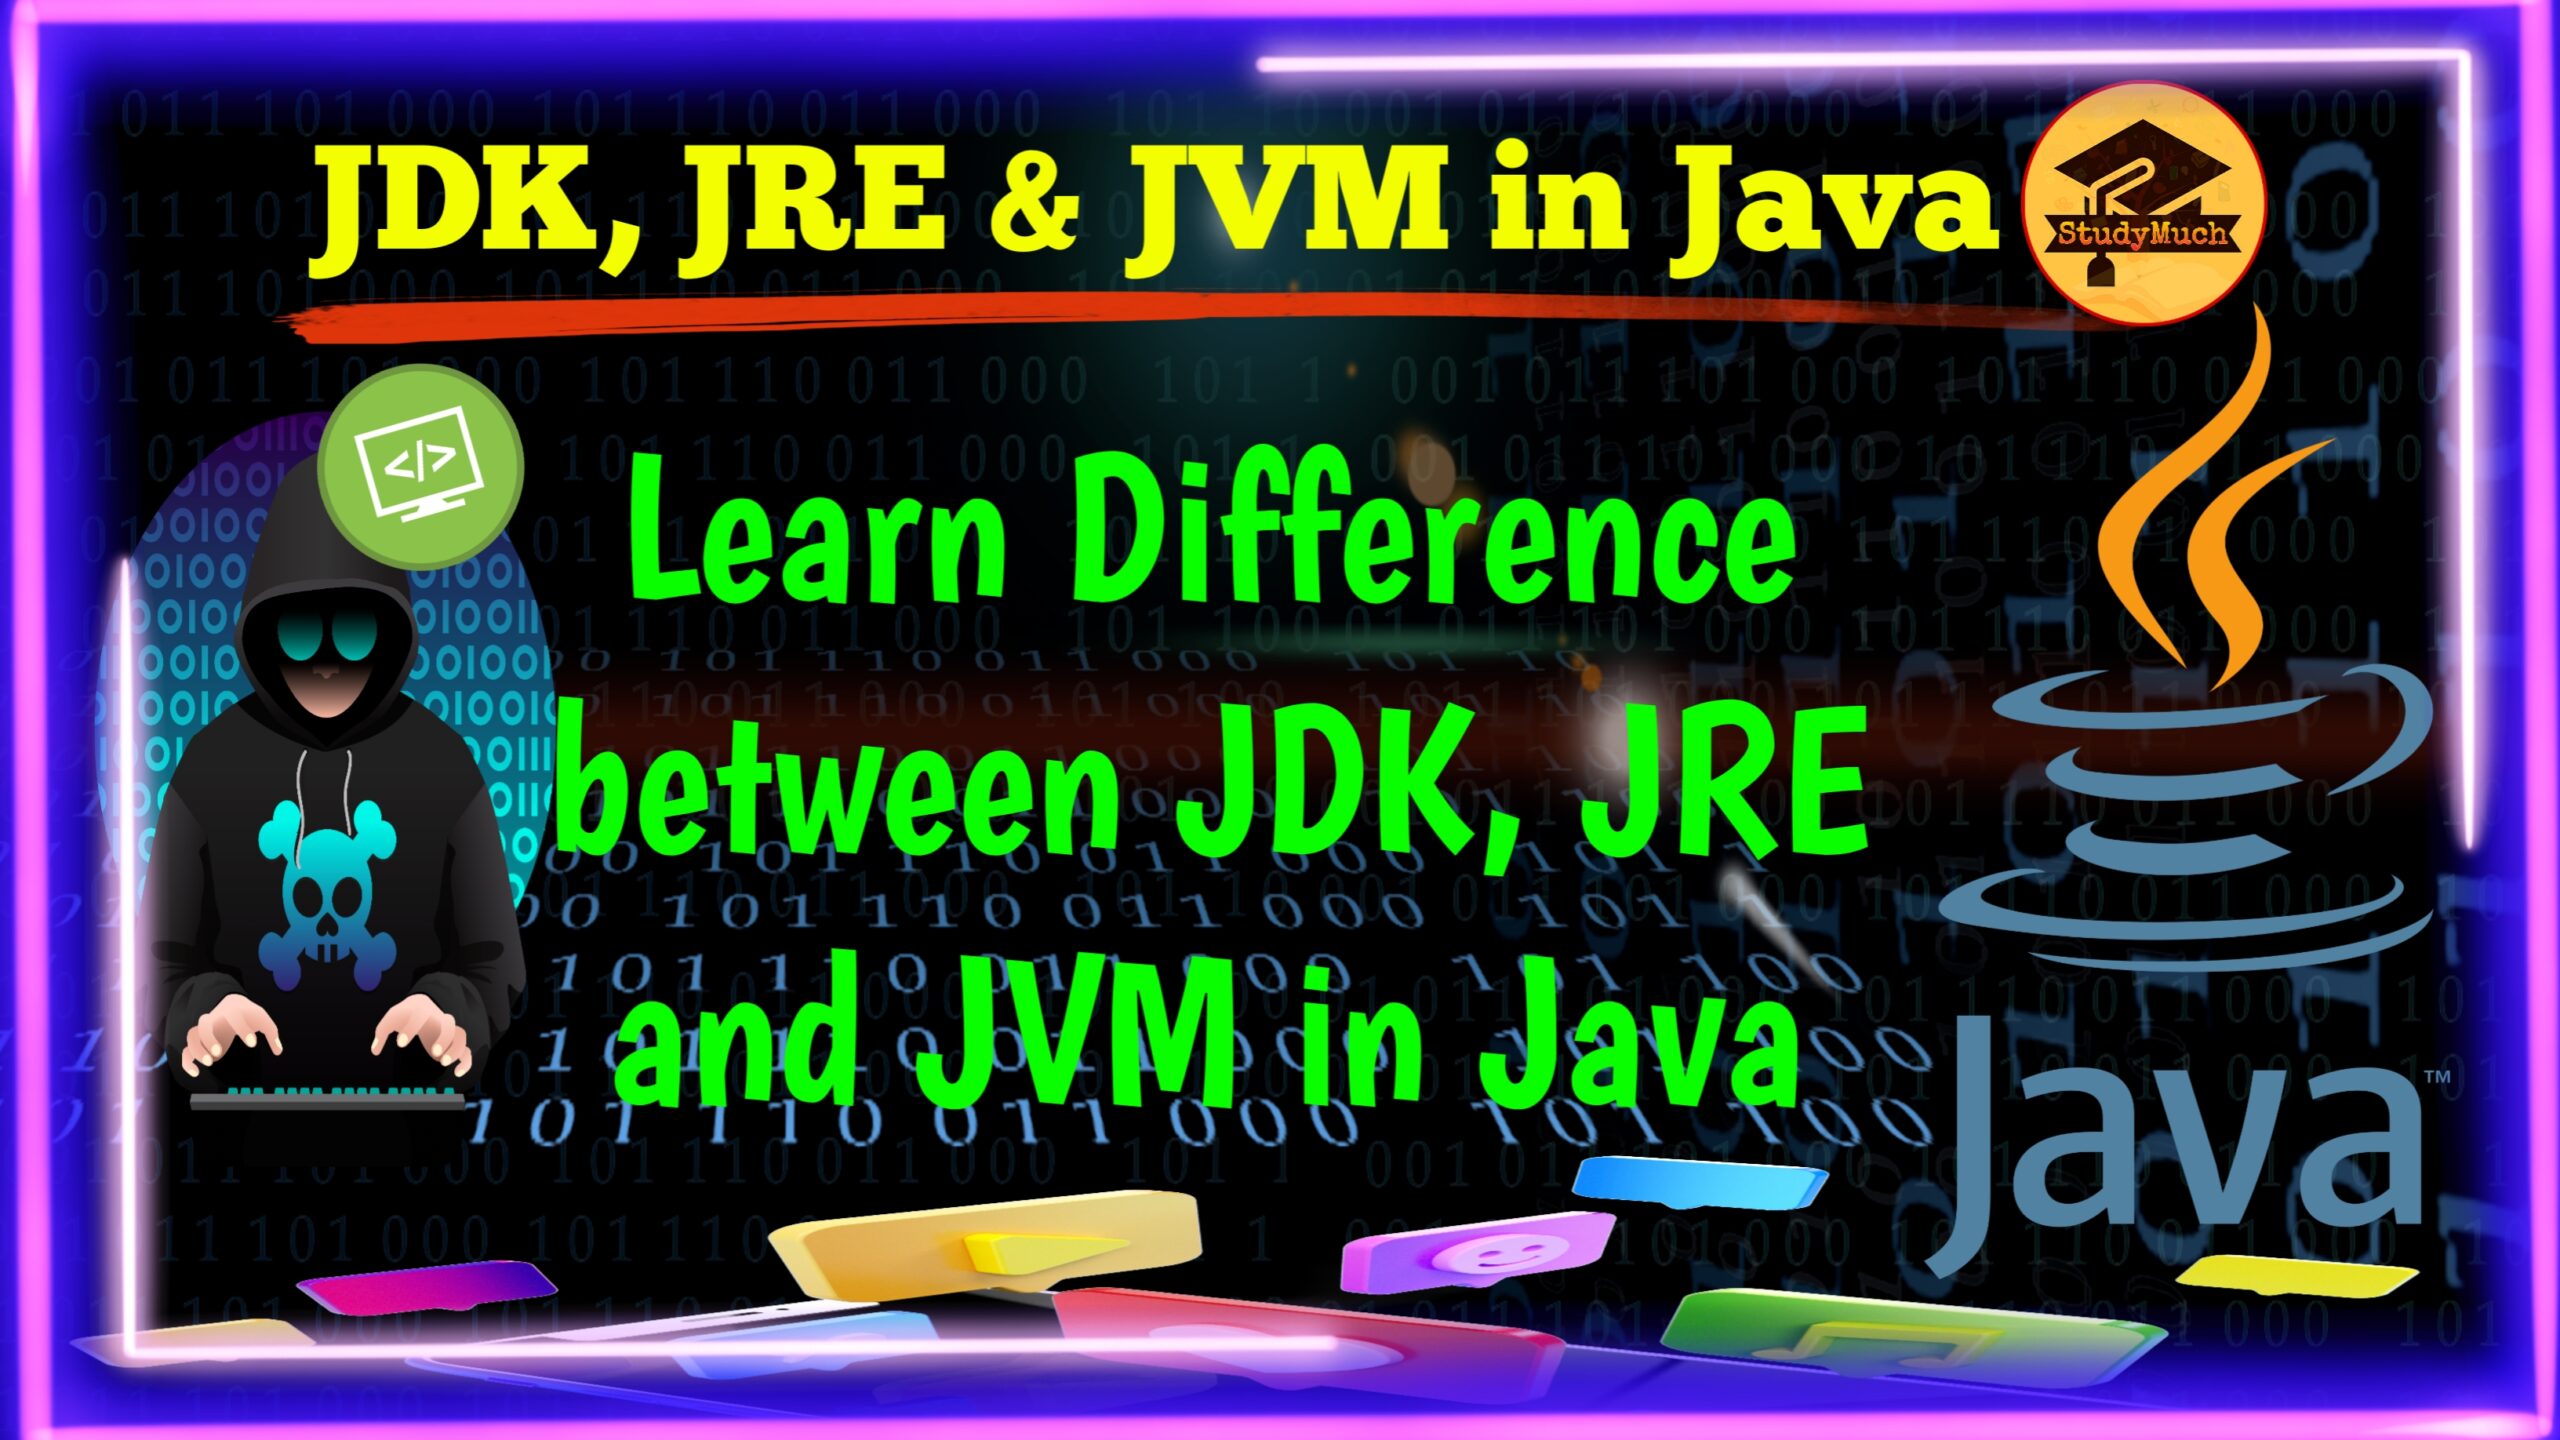 JDK, JRE Java studymuch.in